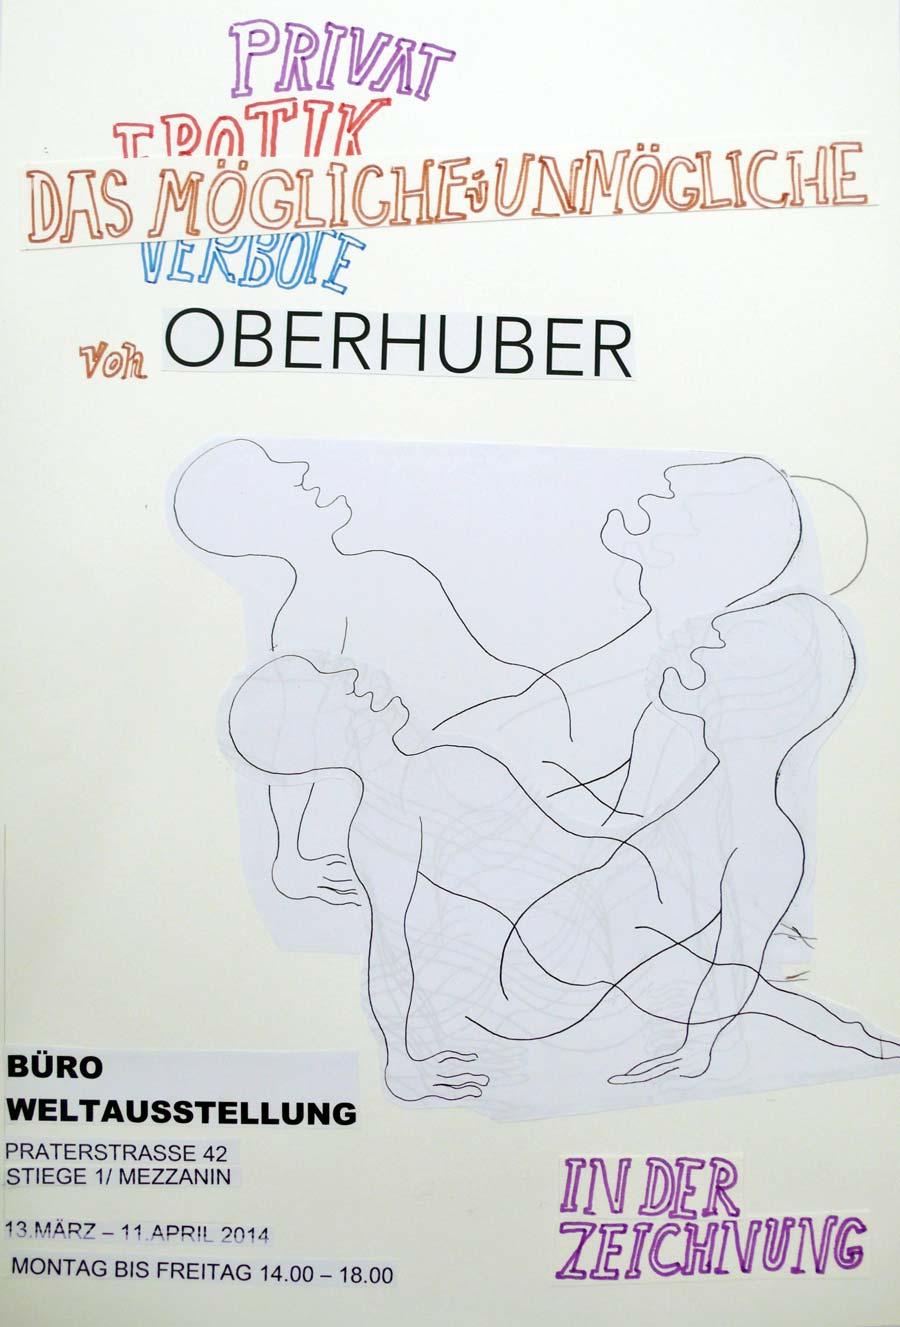 „Privat Erotik Verbote – Das Mögliche und Unmögliche von Oberhuber in der Zeichnung“, 2013, Mischtechnik auf Papier